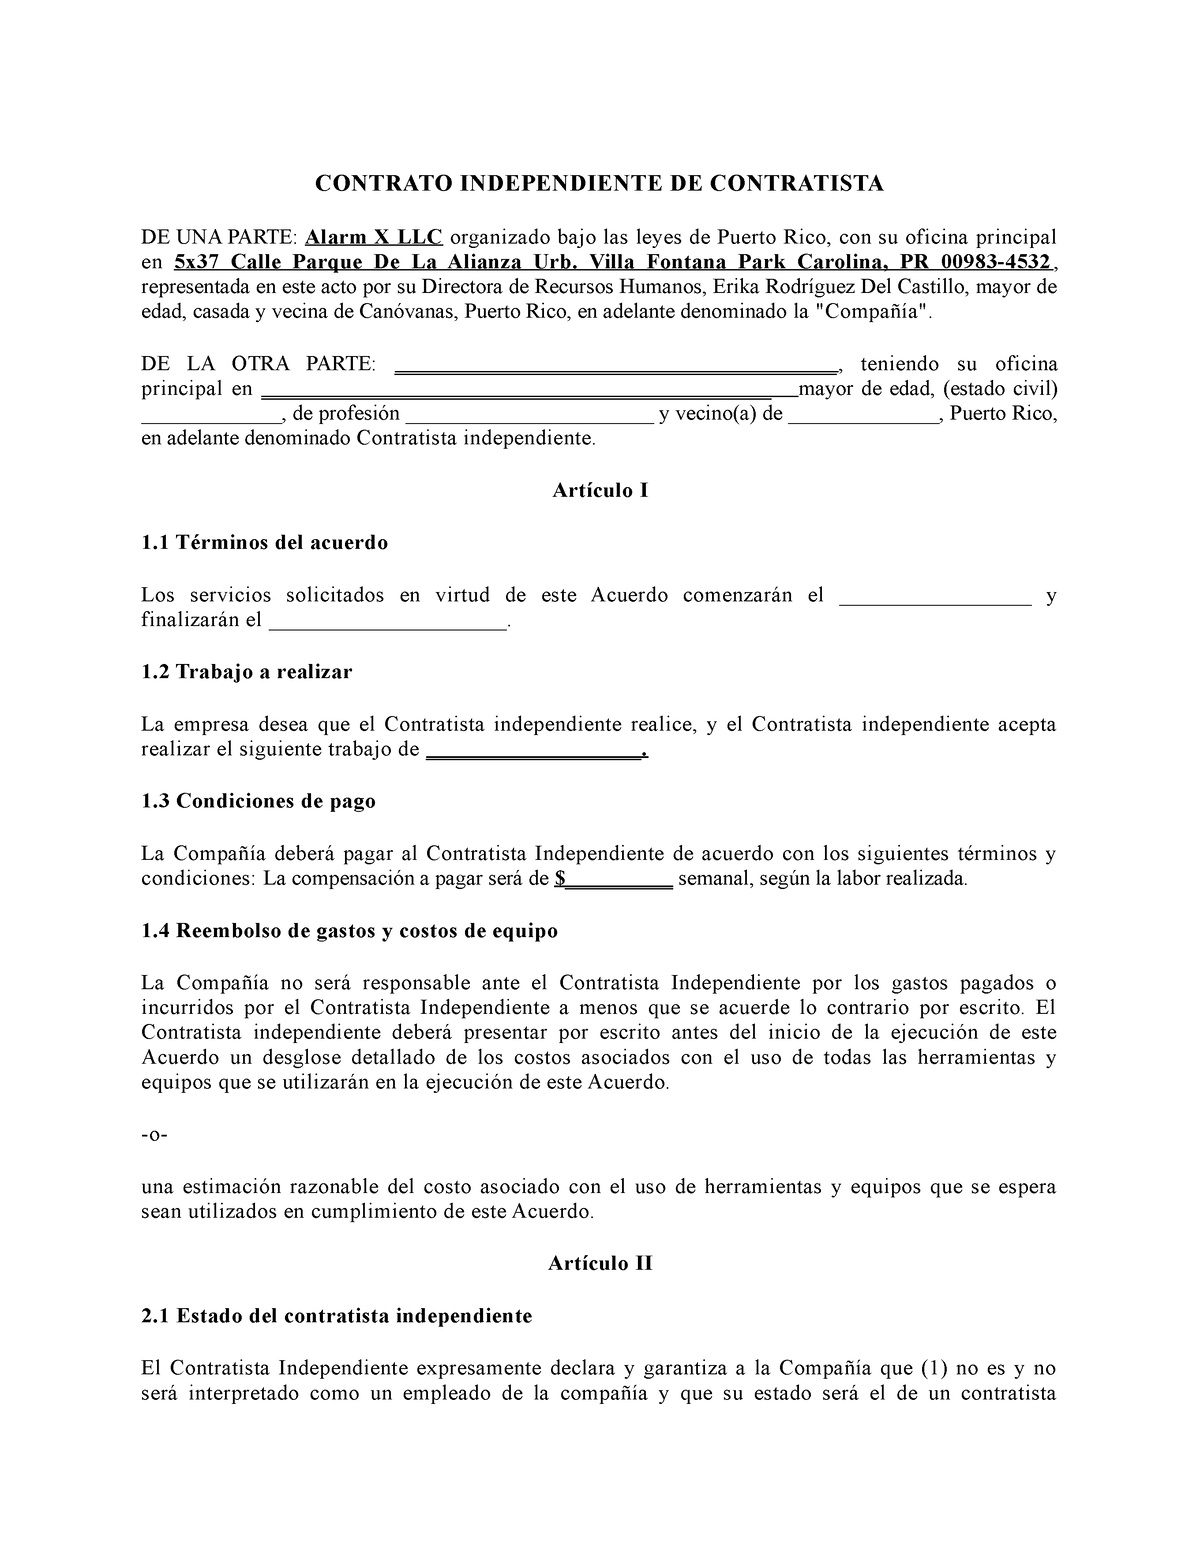 Contrato de Contratista Independiente - Redaccion y Estilo - Studocu